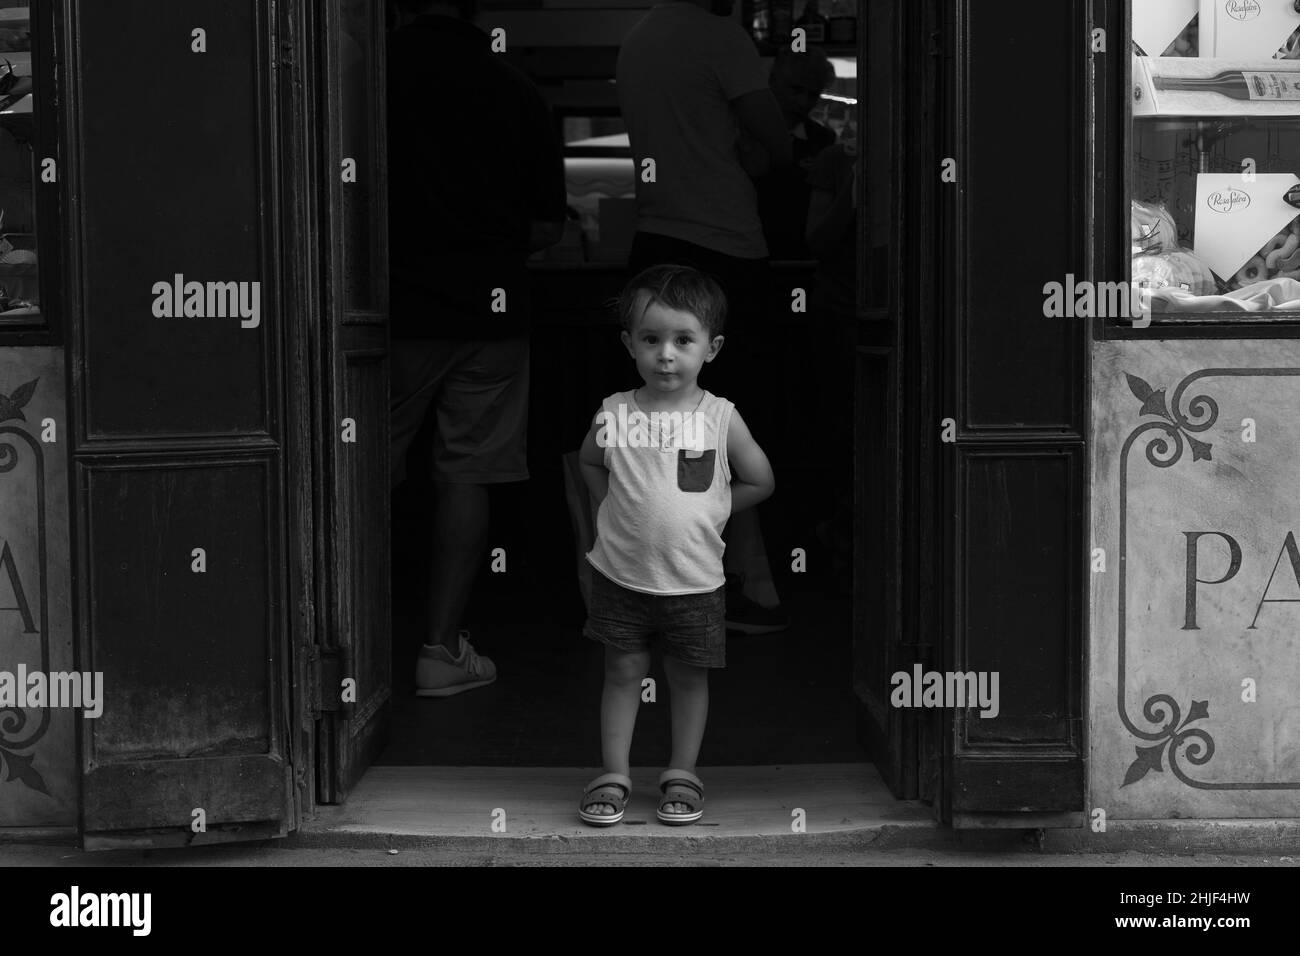 Ritratto di un bambino piccolo di fronte ad un negozio tipico di Venezia. Foto d'epoca in bianco e nero Foto Stock